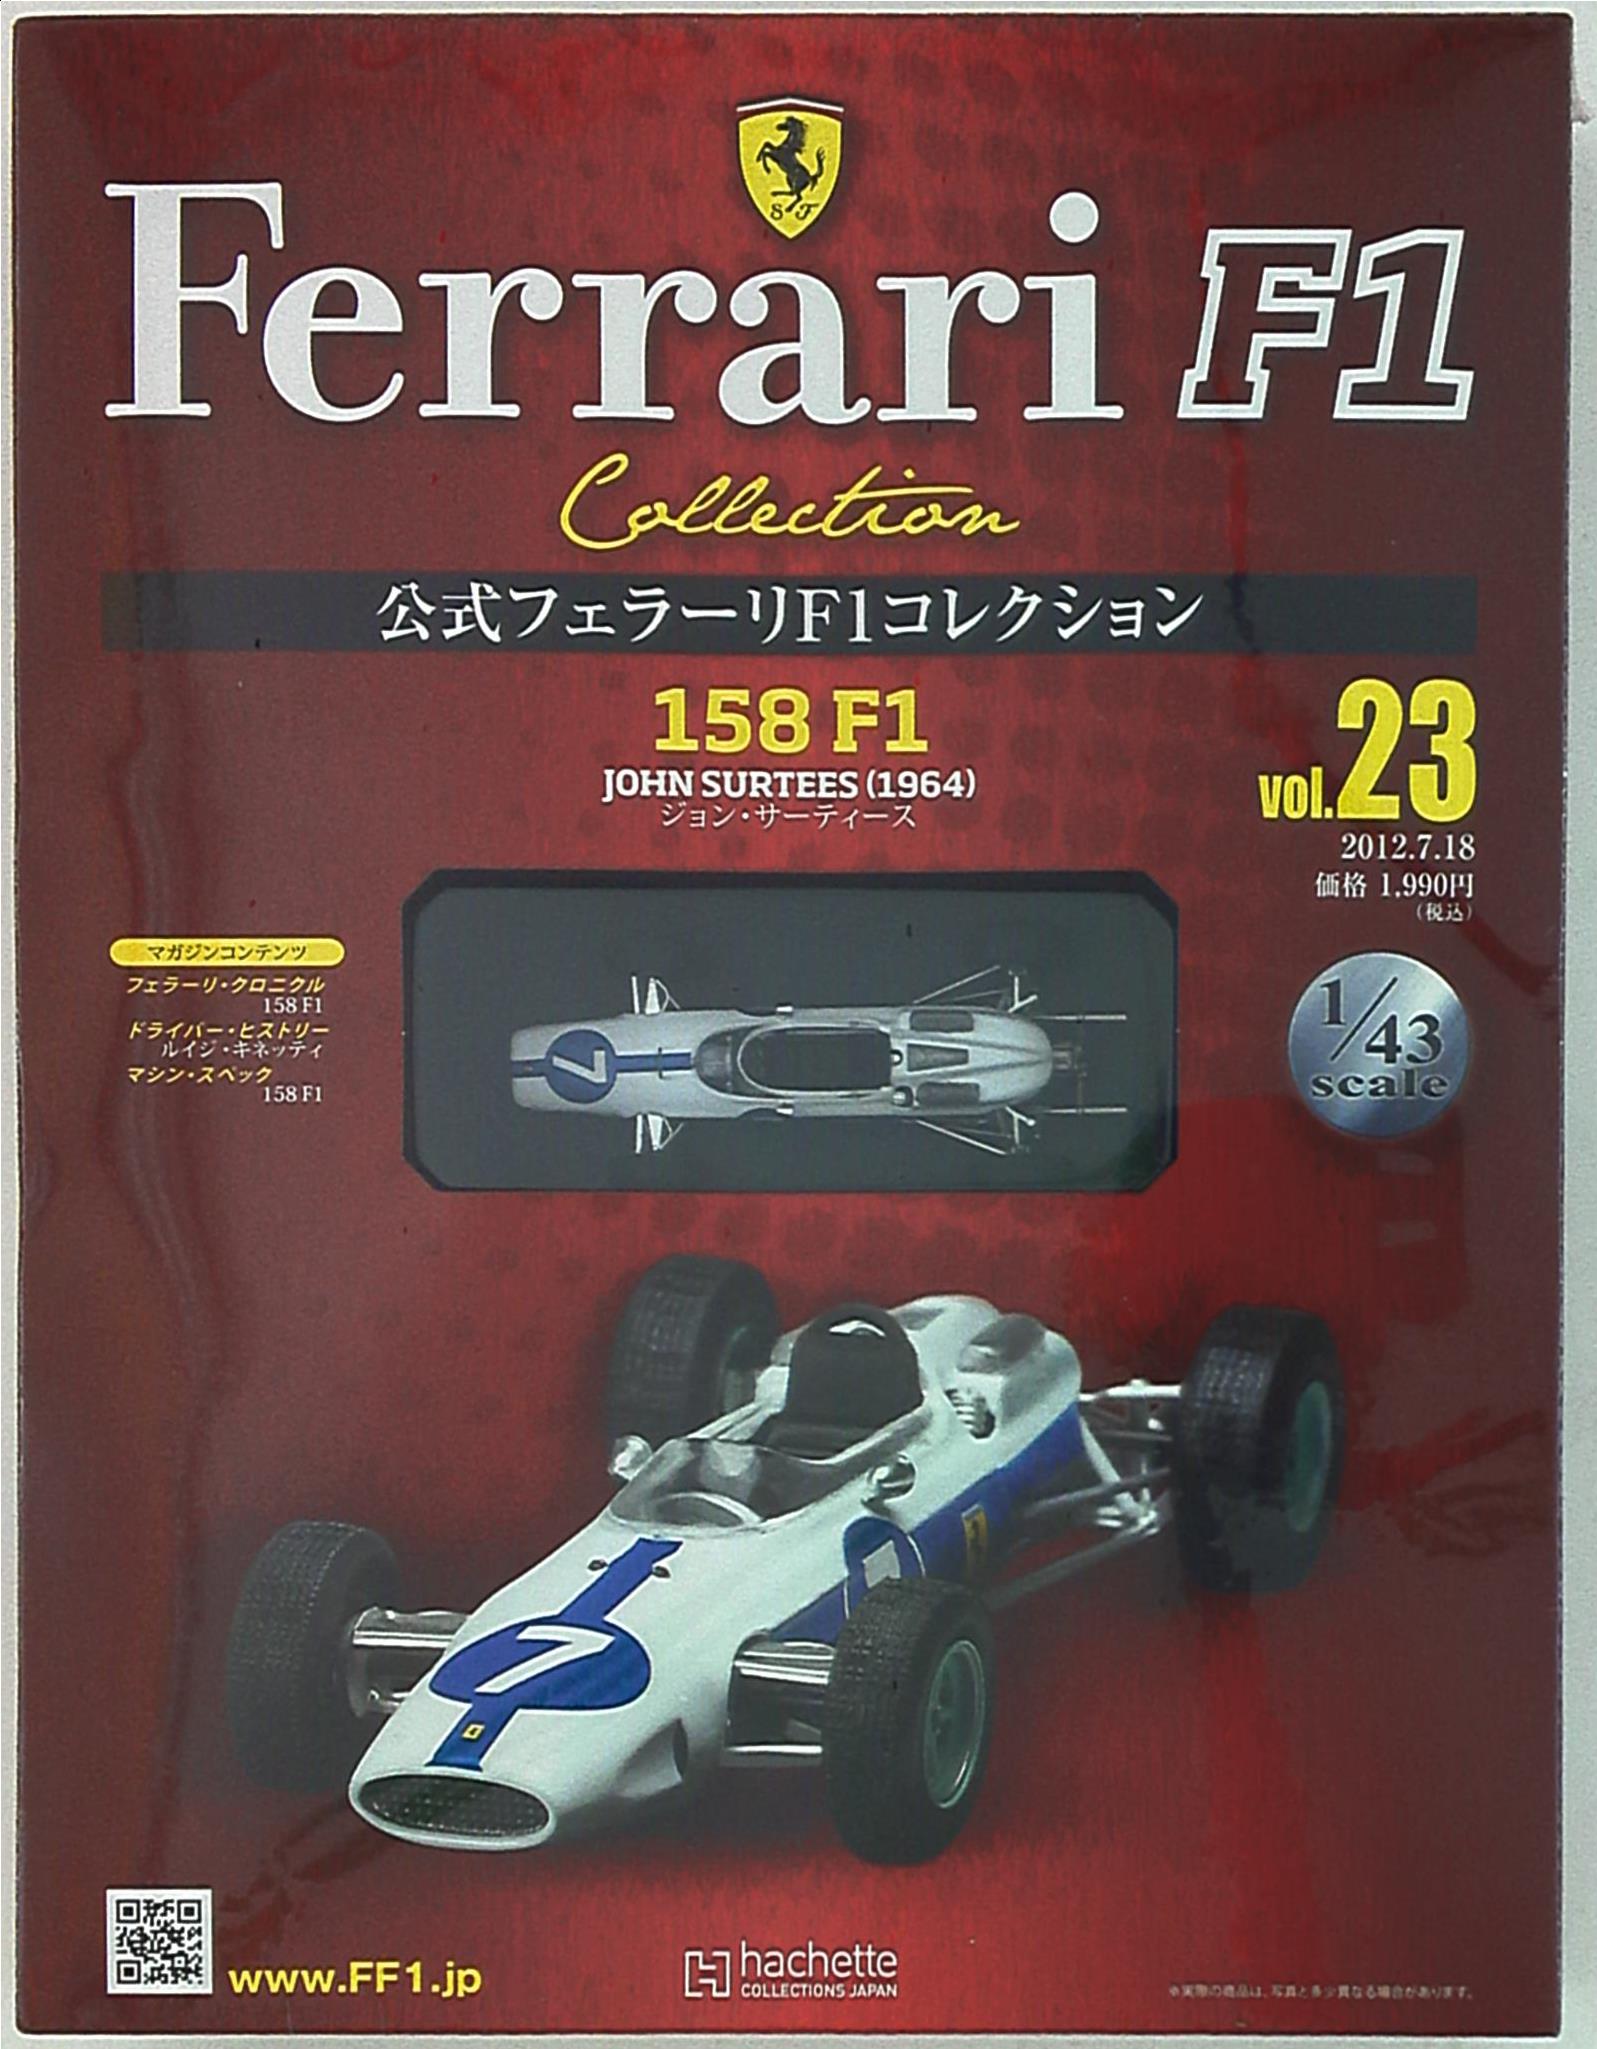 アシェット・コレクションズ 公式フェラーリF1コレクション 158 F1 ジョン・サーティース(1964) 23 | まんだらけ Mandarake